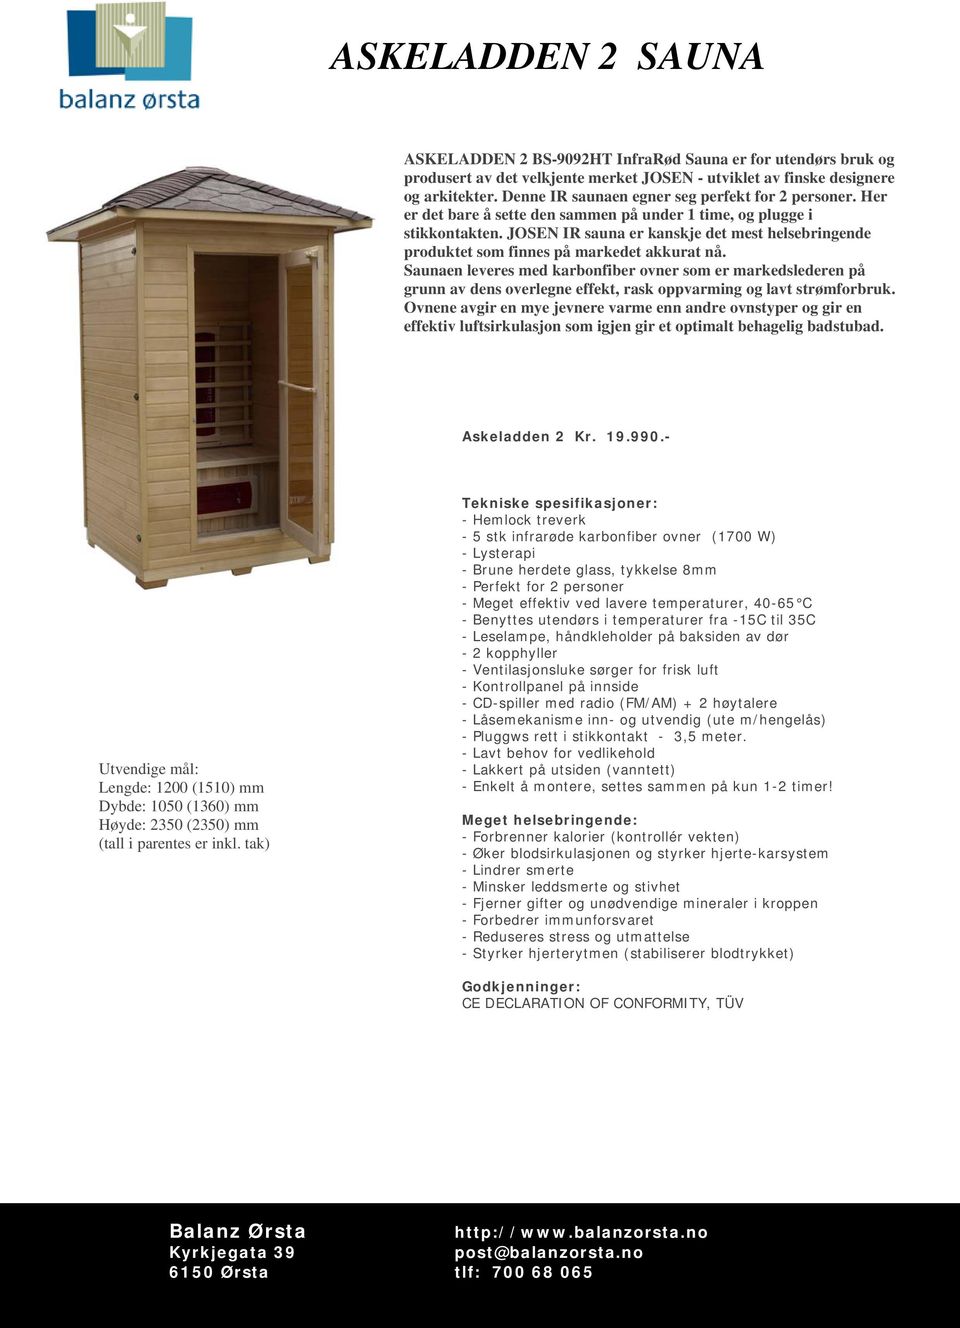 JOSEN IR sauna er kanskje det mest helsebringende produktet som finnes på markedet akkurat nå. Askeladden 2 Kr. 19.990.